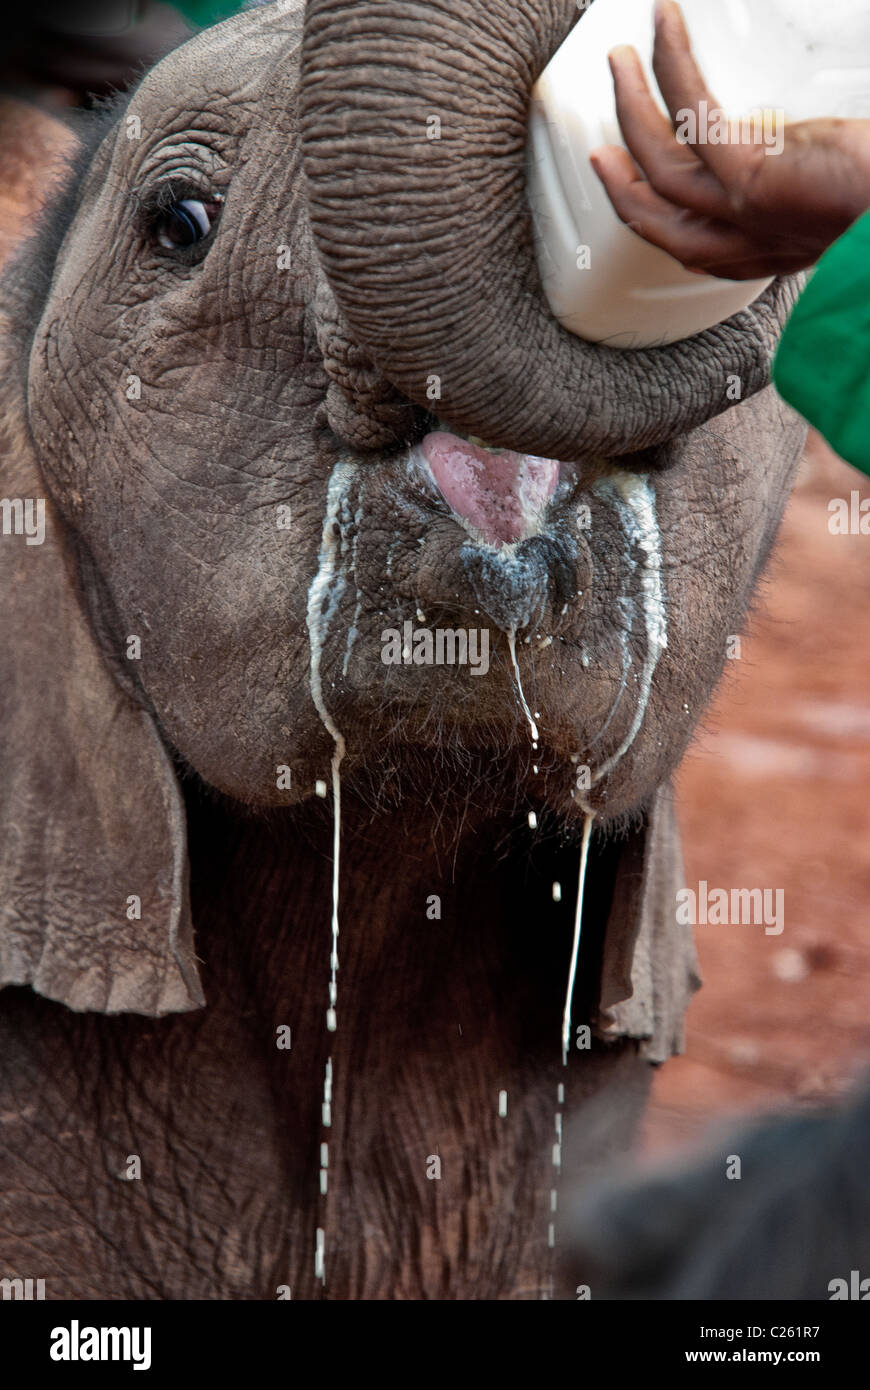 Elefante africano di vitello, Loxodonta africana, bere latte da una bottiglia,Sheldrick l'Orfanotrofio degli Elefanti, Nairobi, Kenya, Africa Foto Stock